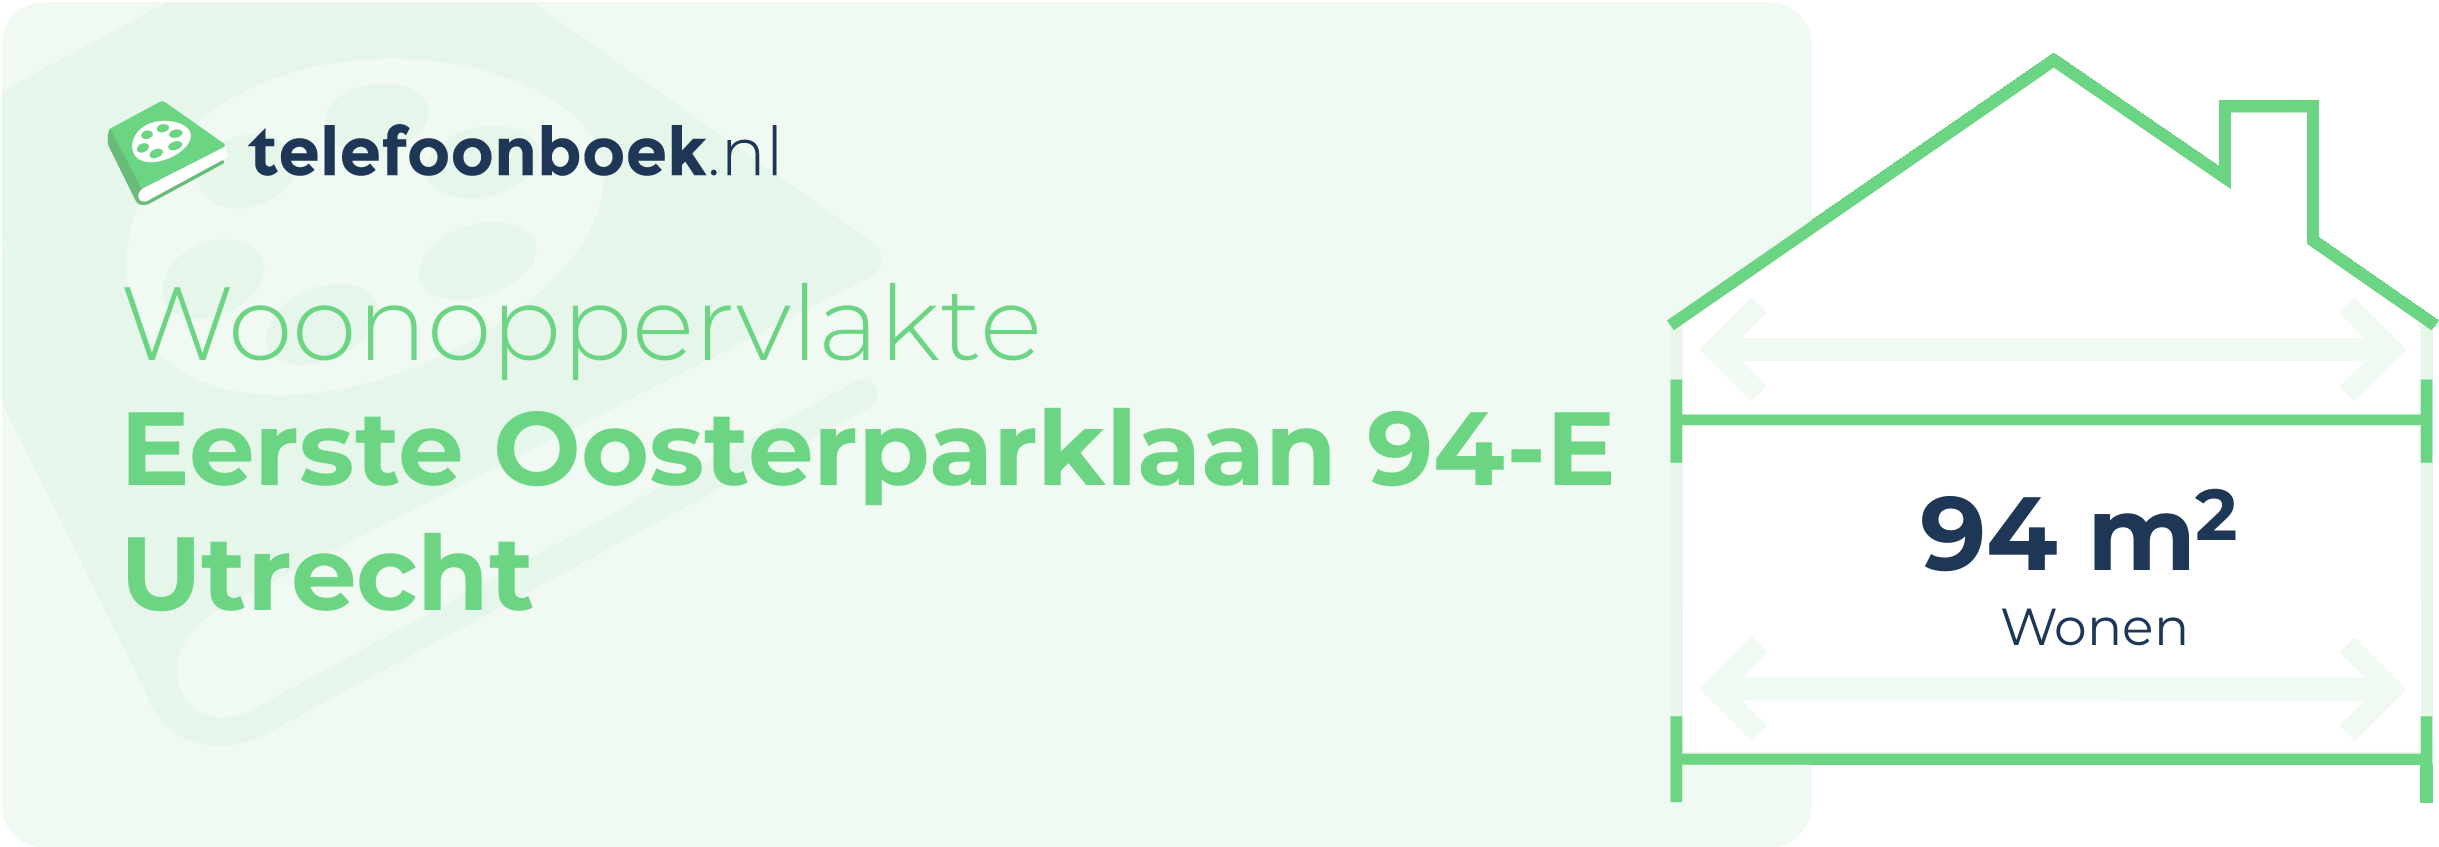 Woonoppervlakte Eerste Oosterparklaan 94-E Utrecht